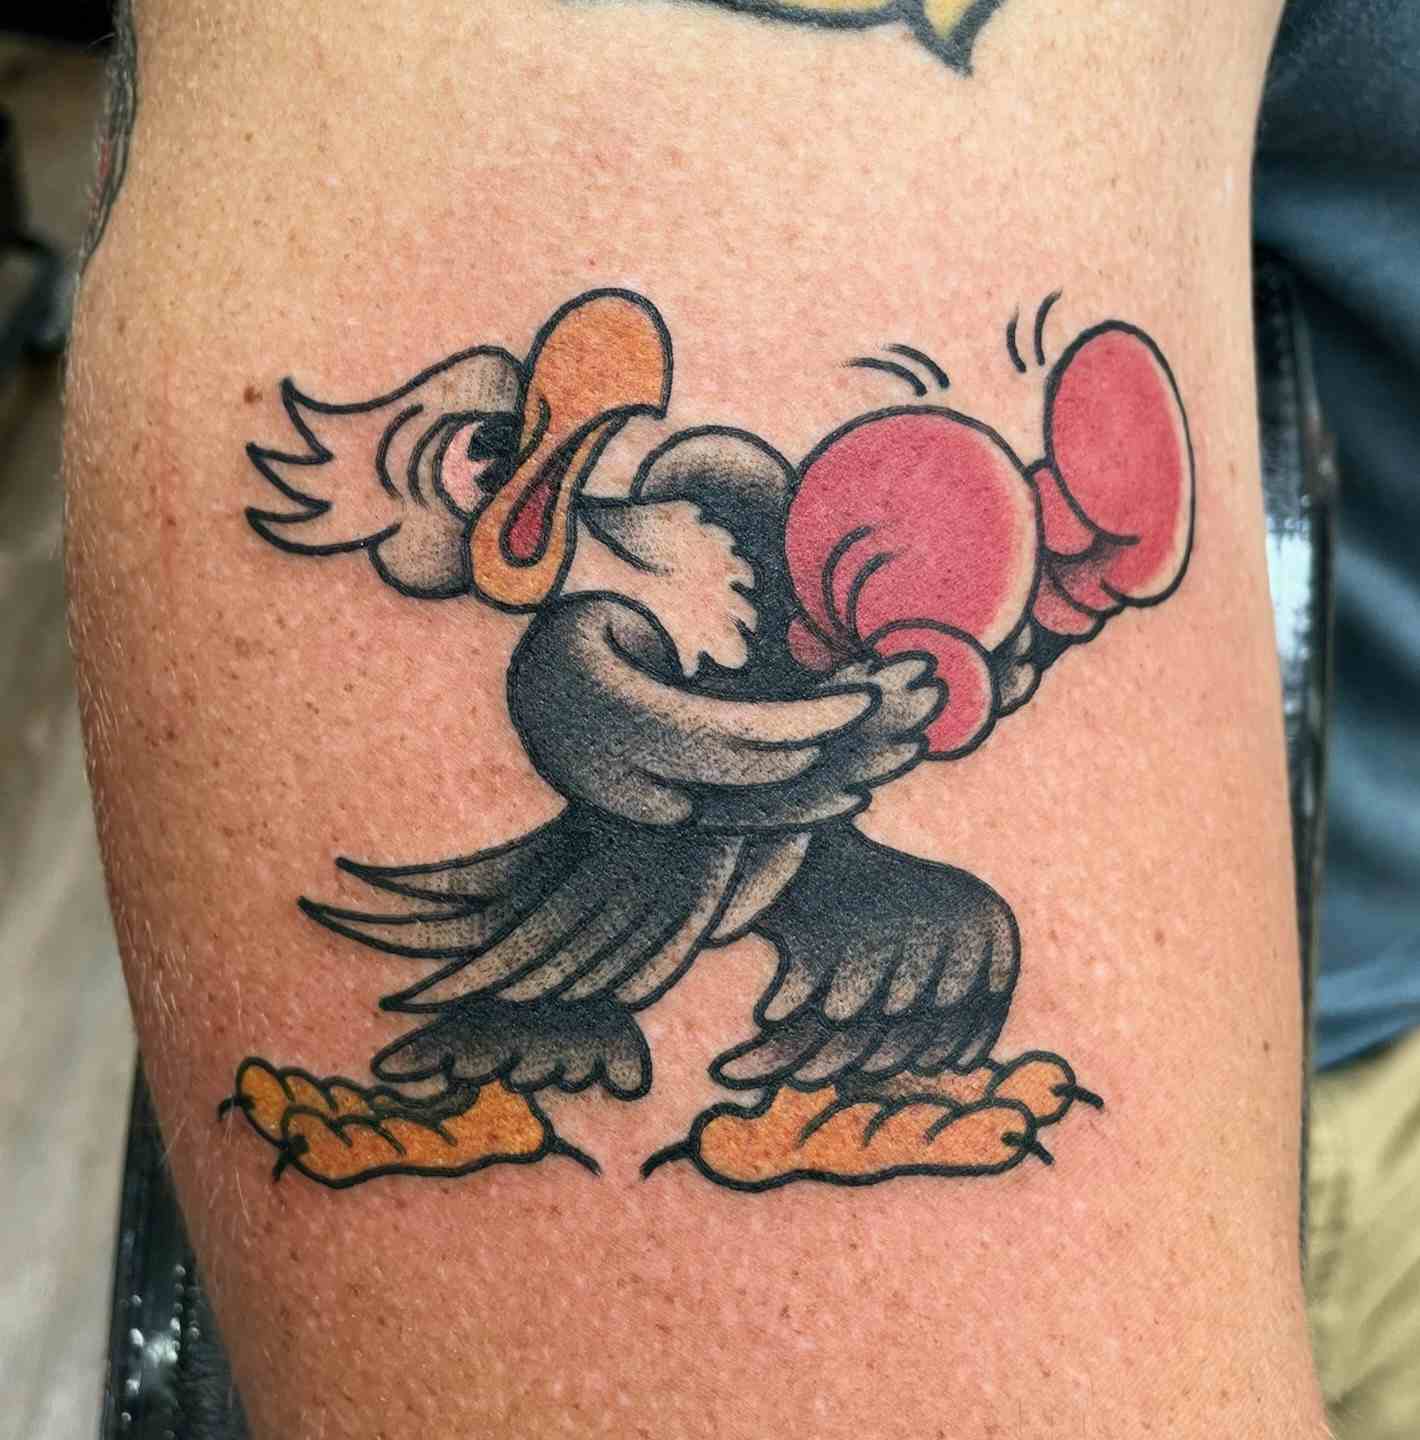 Boxing eagle tattoo